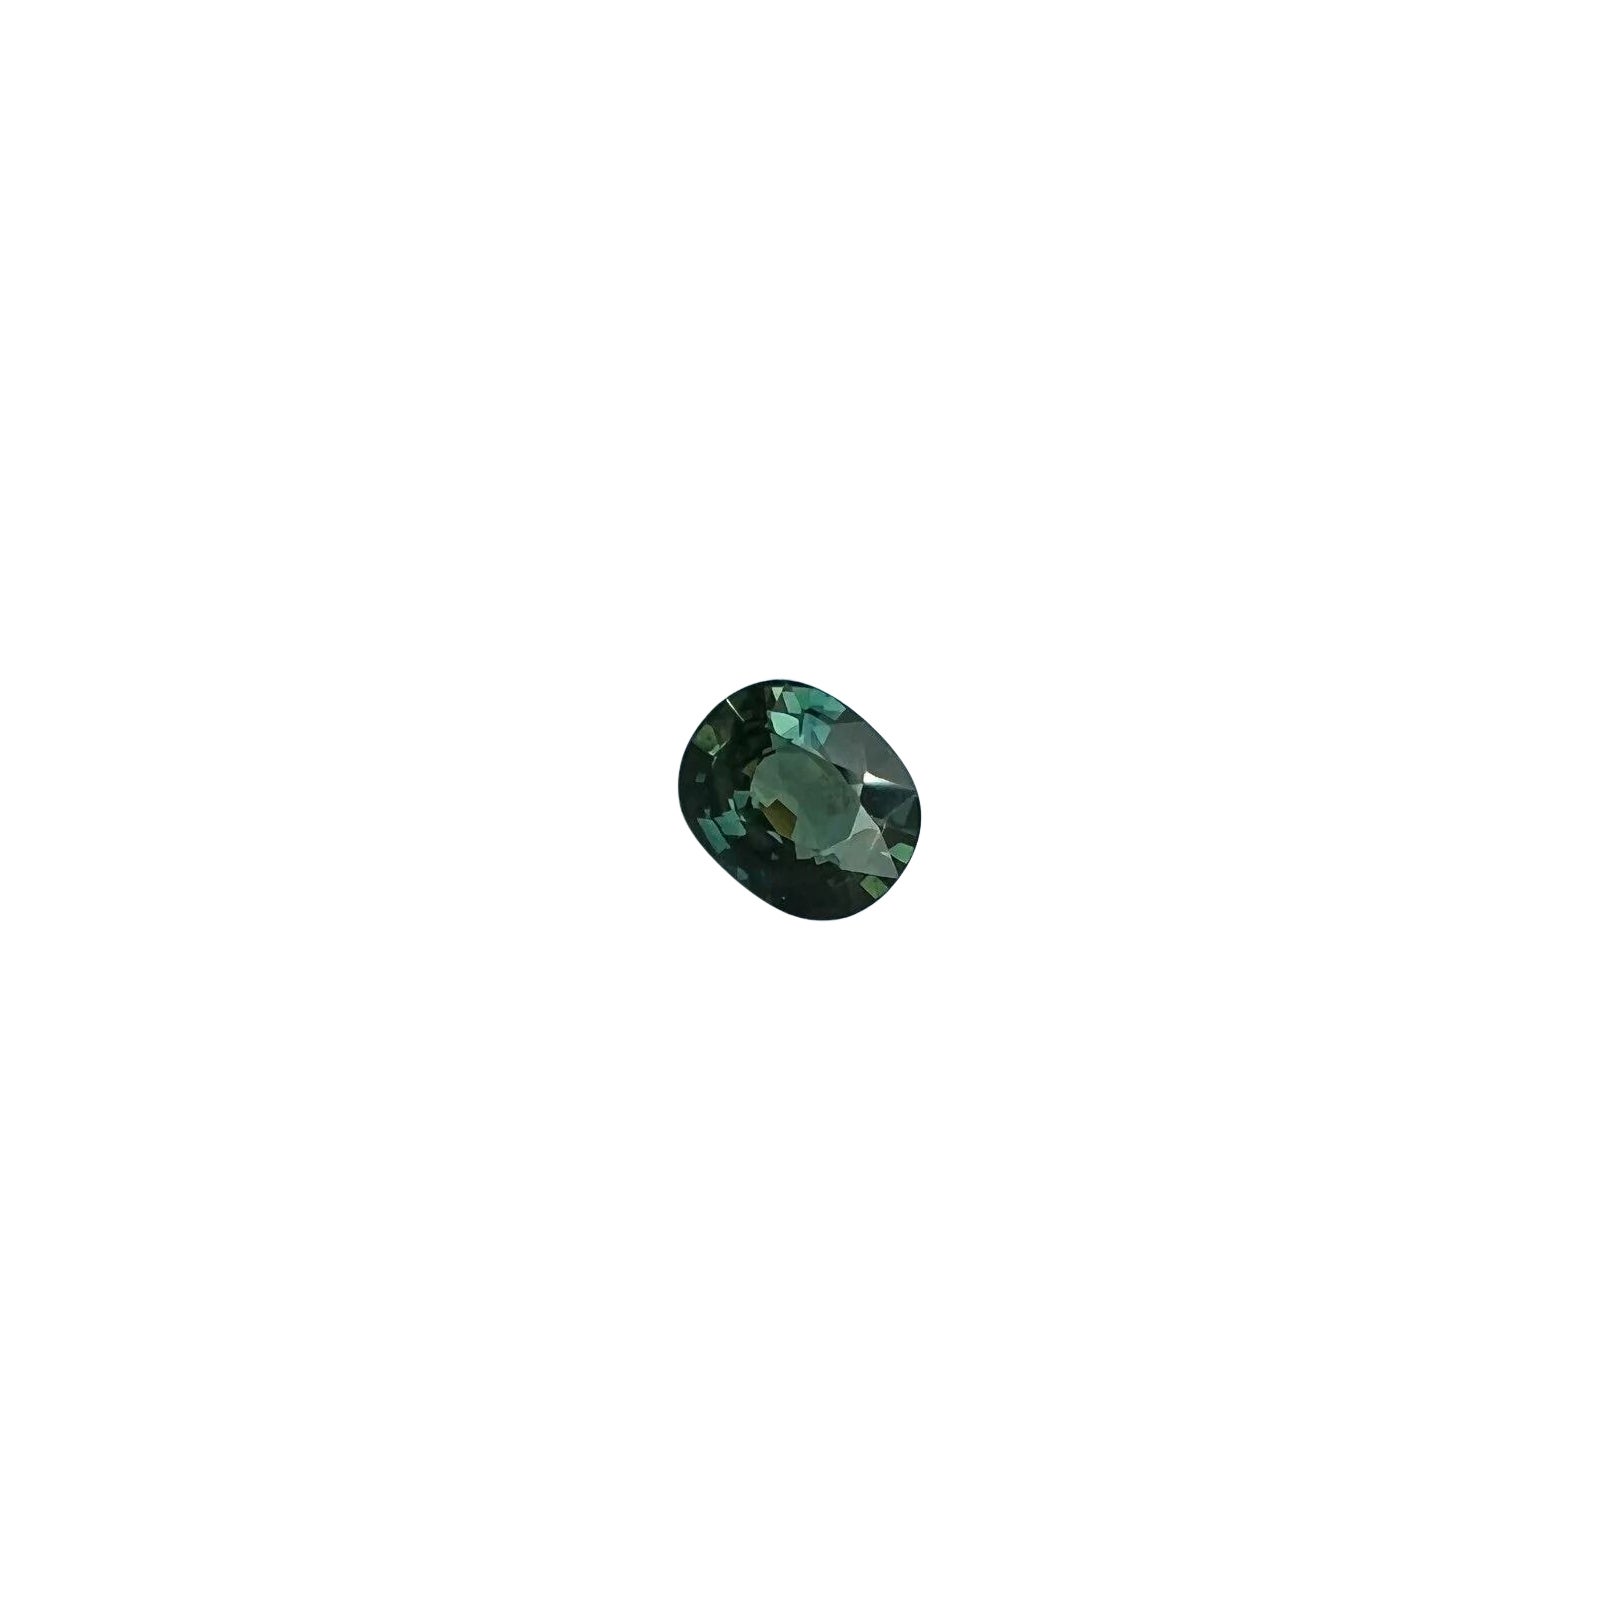 Saphir bleu sarcelle non traité de 1,15 carat, taille ovale, certifié IGI